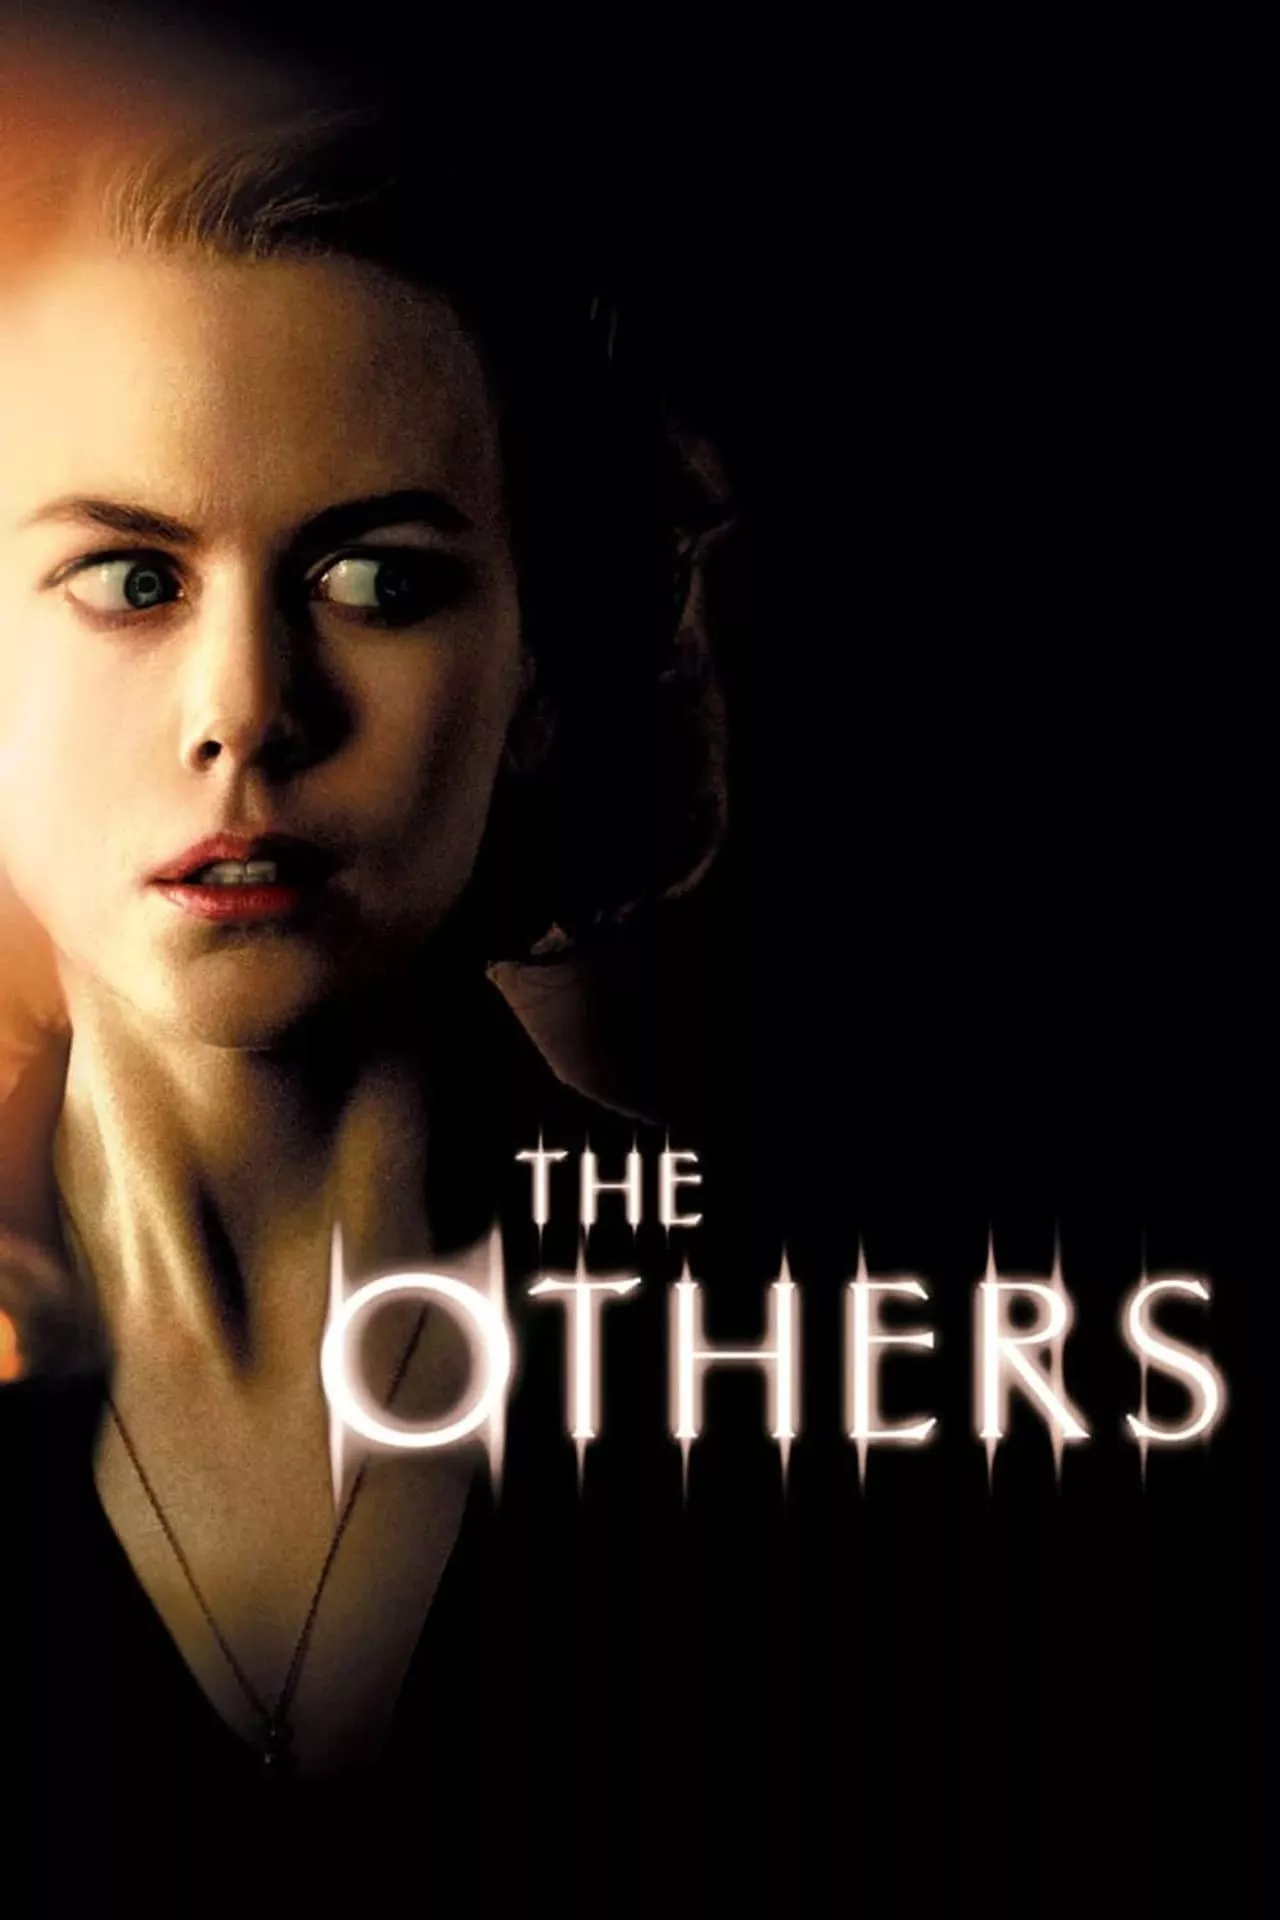 The Others (2001) คฤหาสน์ สัมผัสผวา